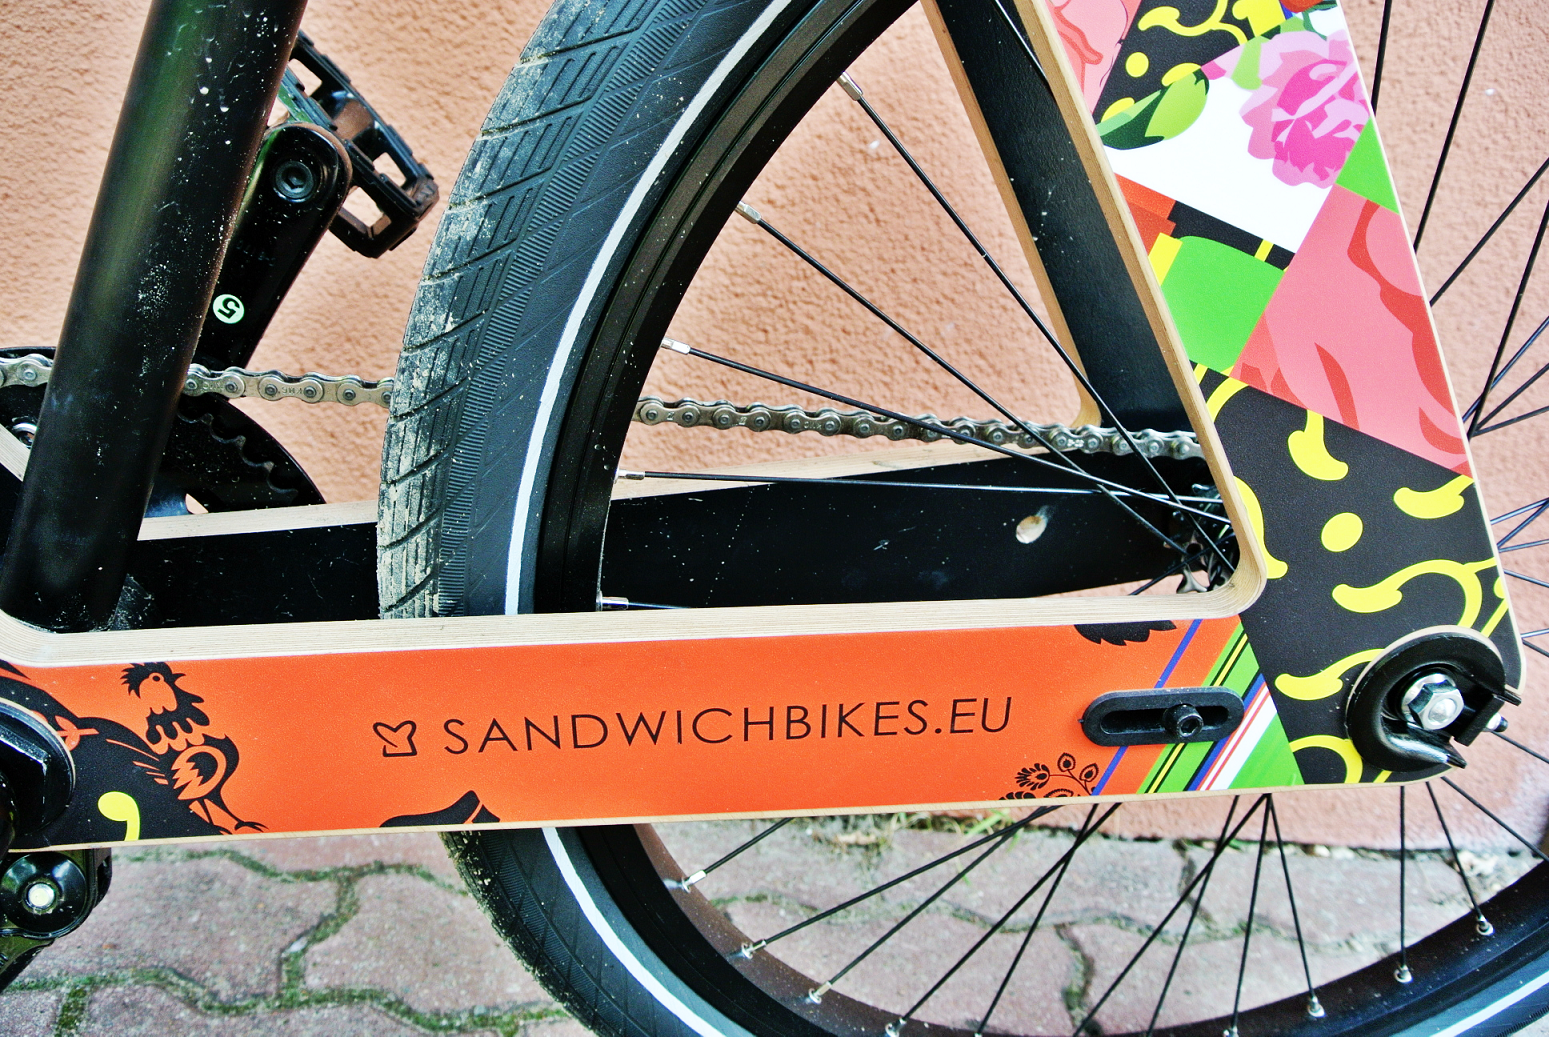 kolorowy drewniany rower,sandwichbike,ekologiczny rower,elegancki rower,sandwichbikes